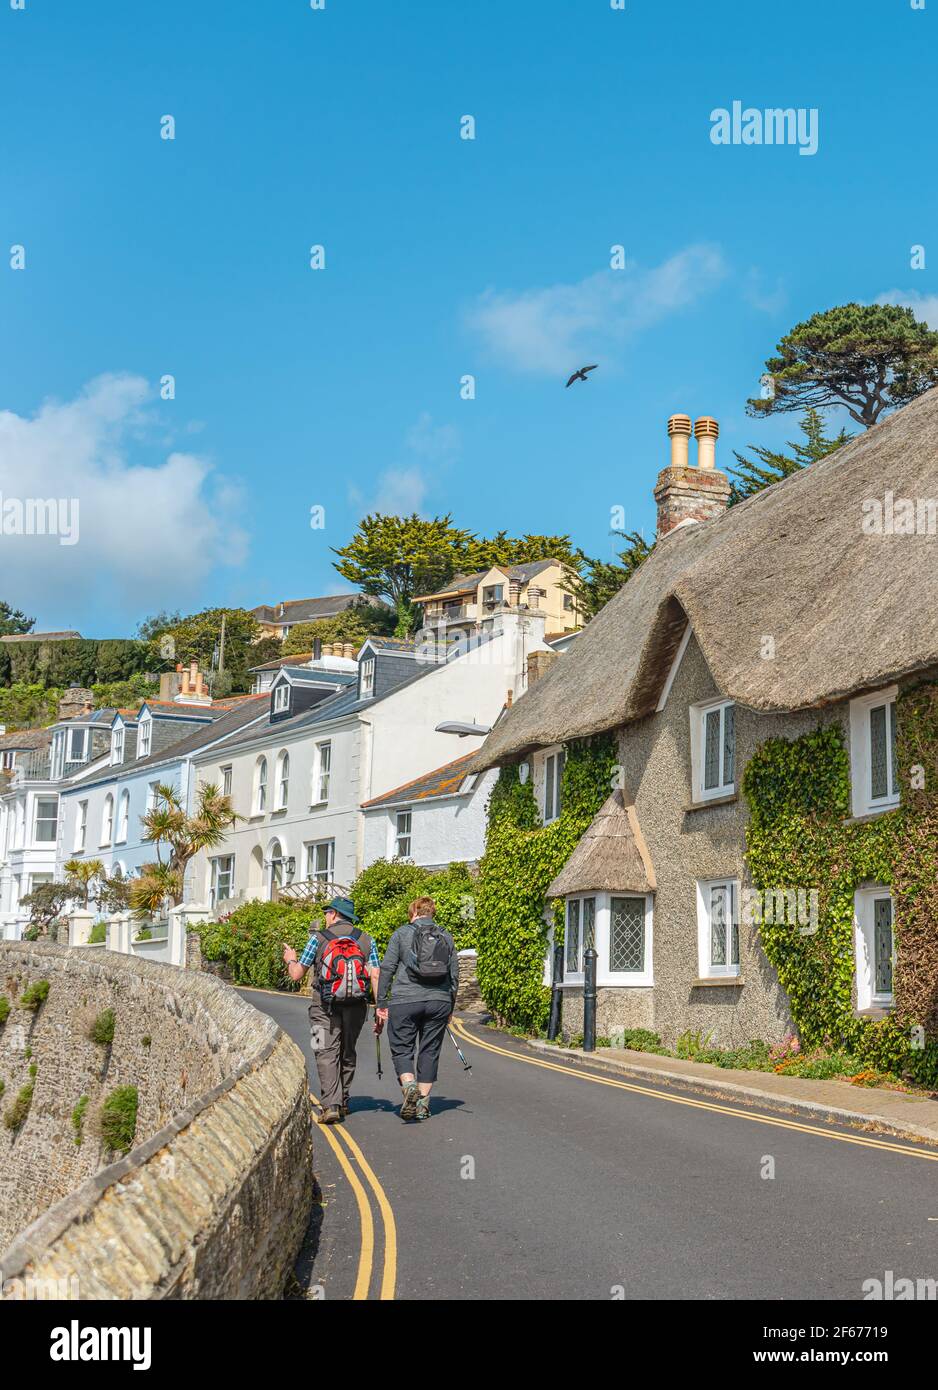 Hiker at a coastal street at the village St.Mawes, Cornwall, England, UK Stock Photo